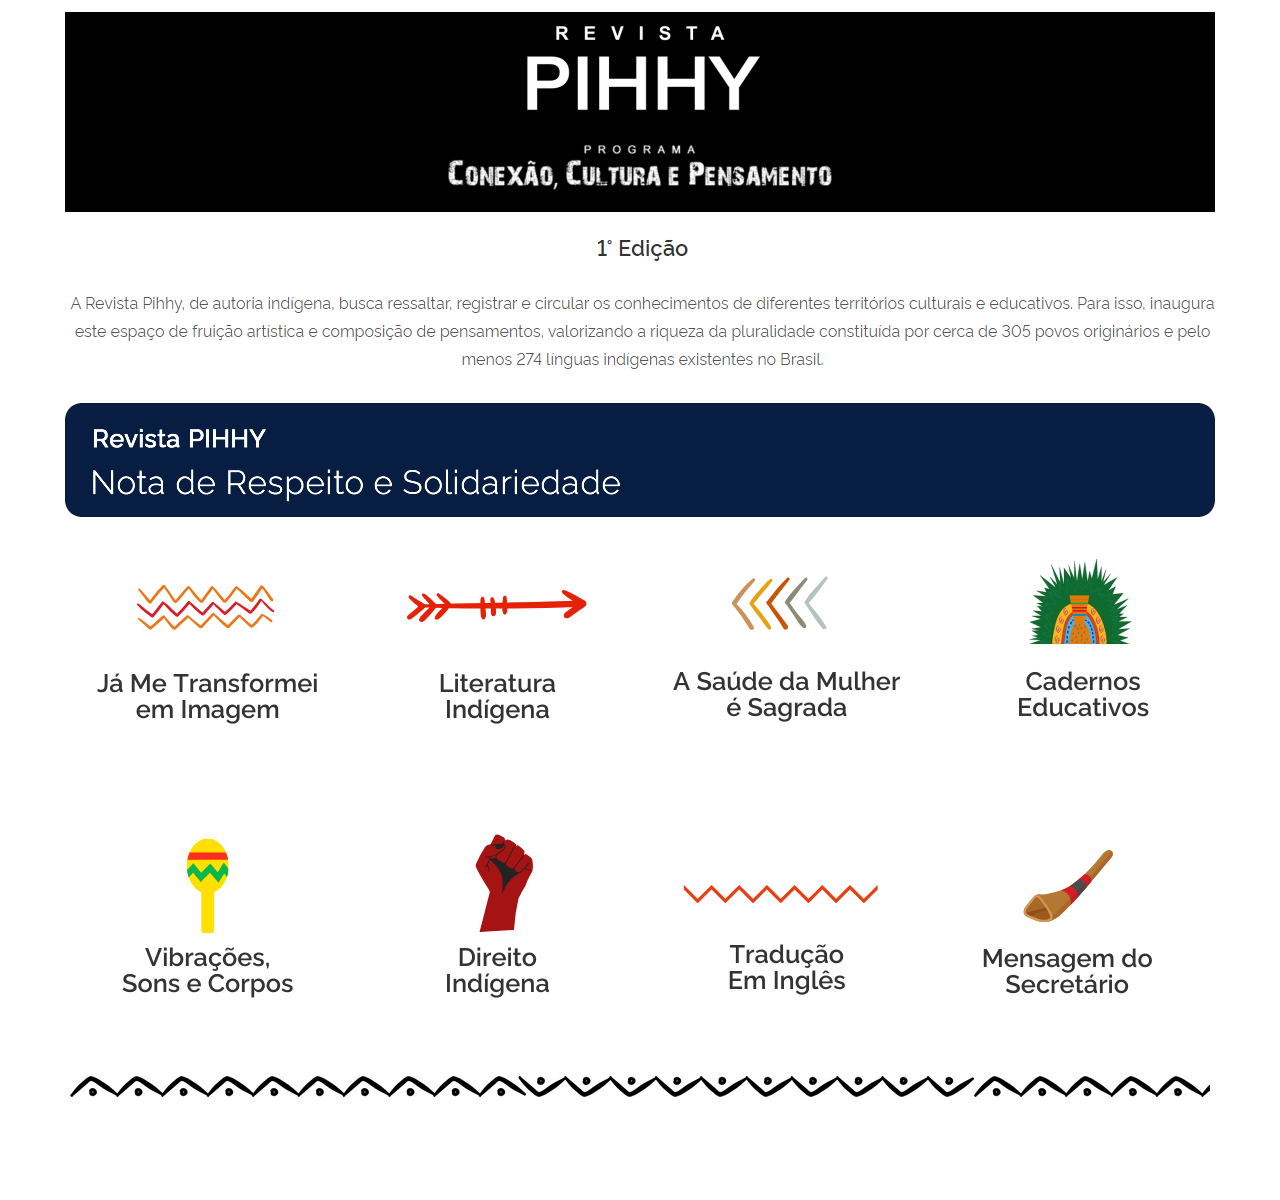 Pihhy-1 - Cards de categorias 18 Pihhy-1 - Cards de categorias